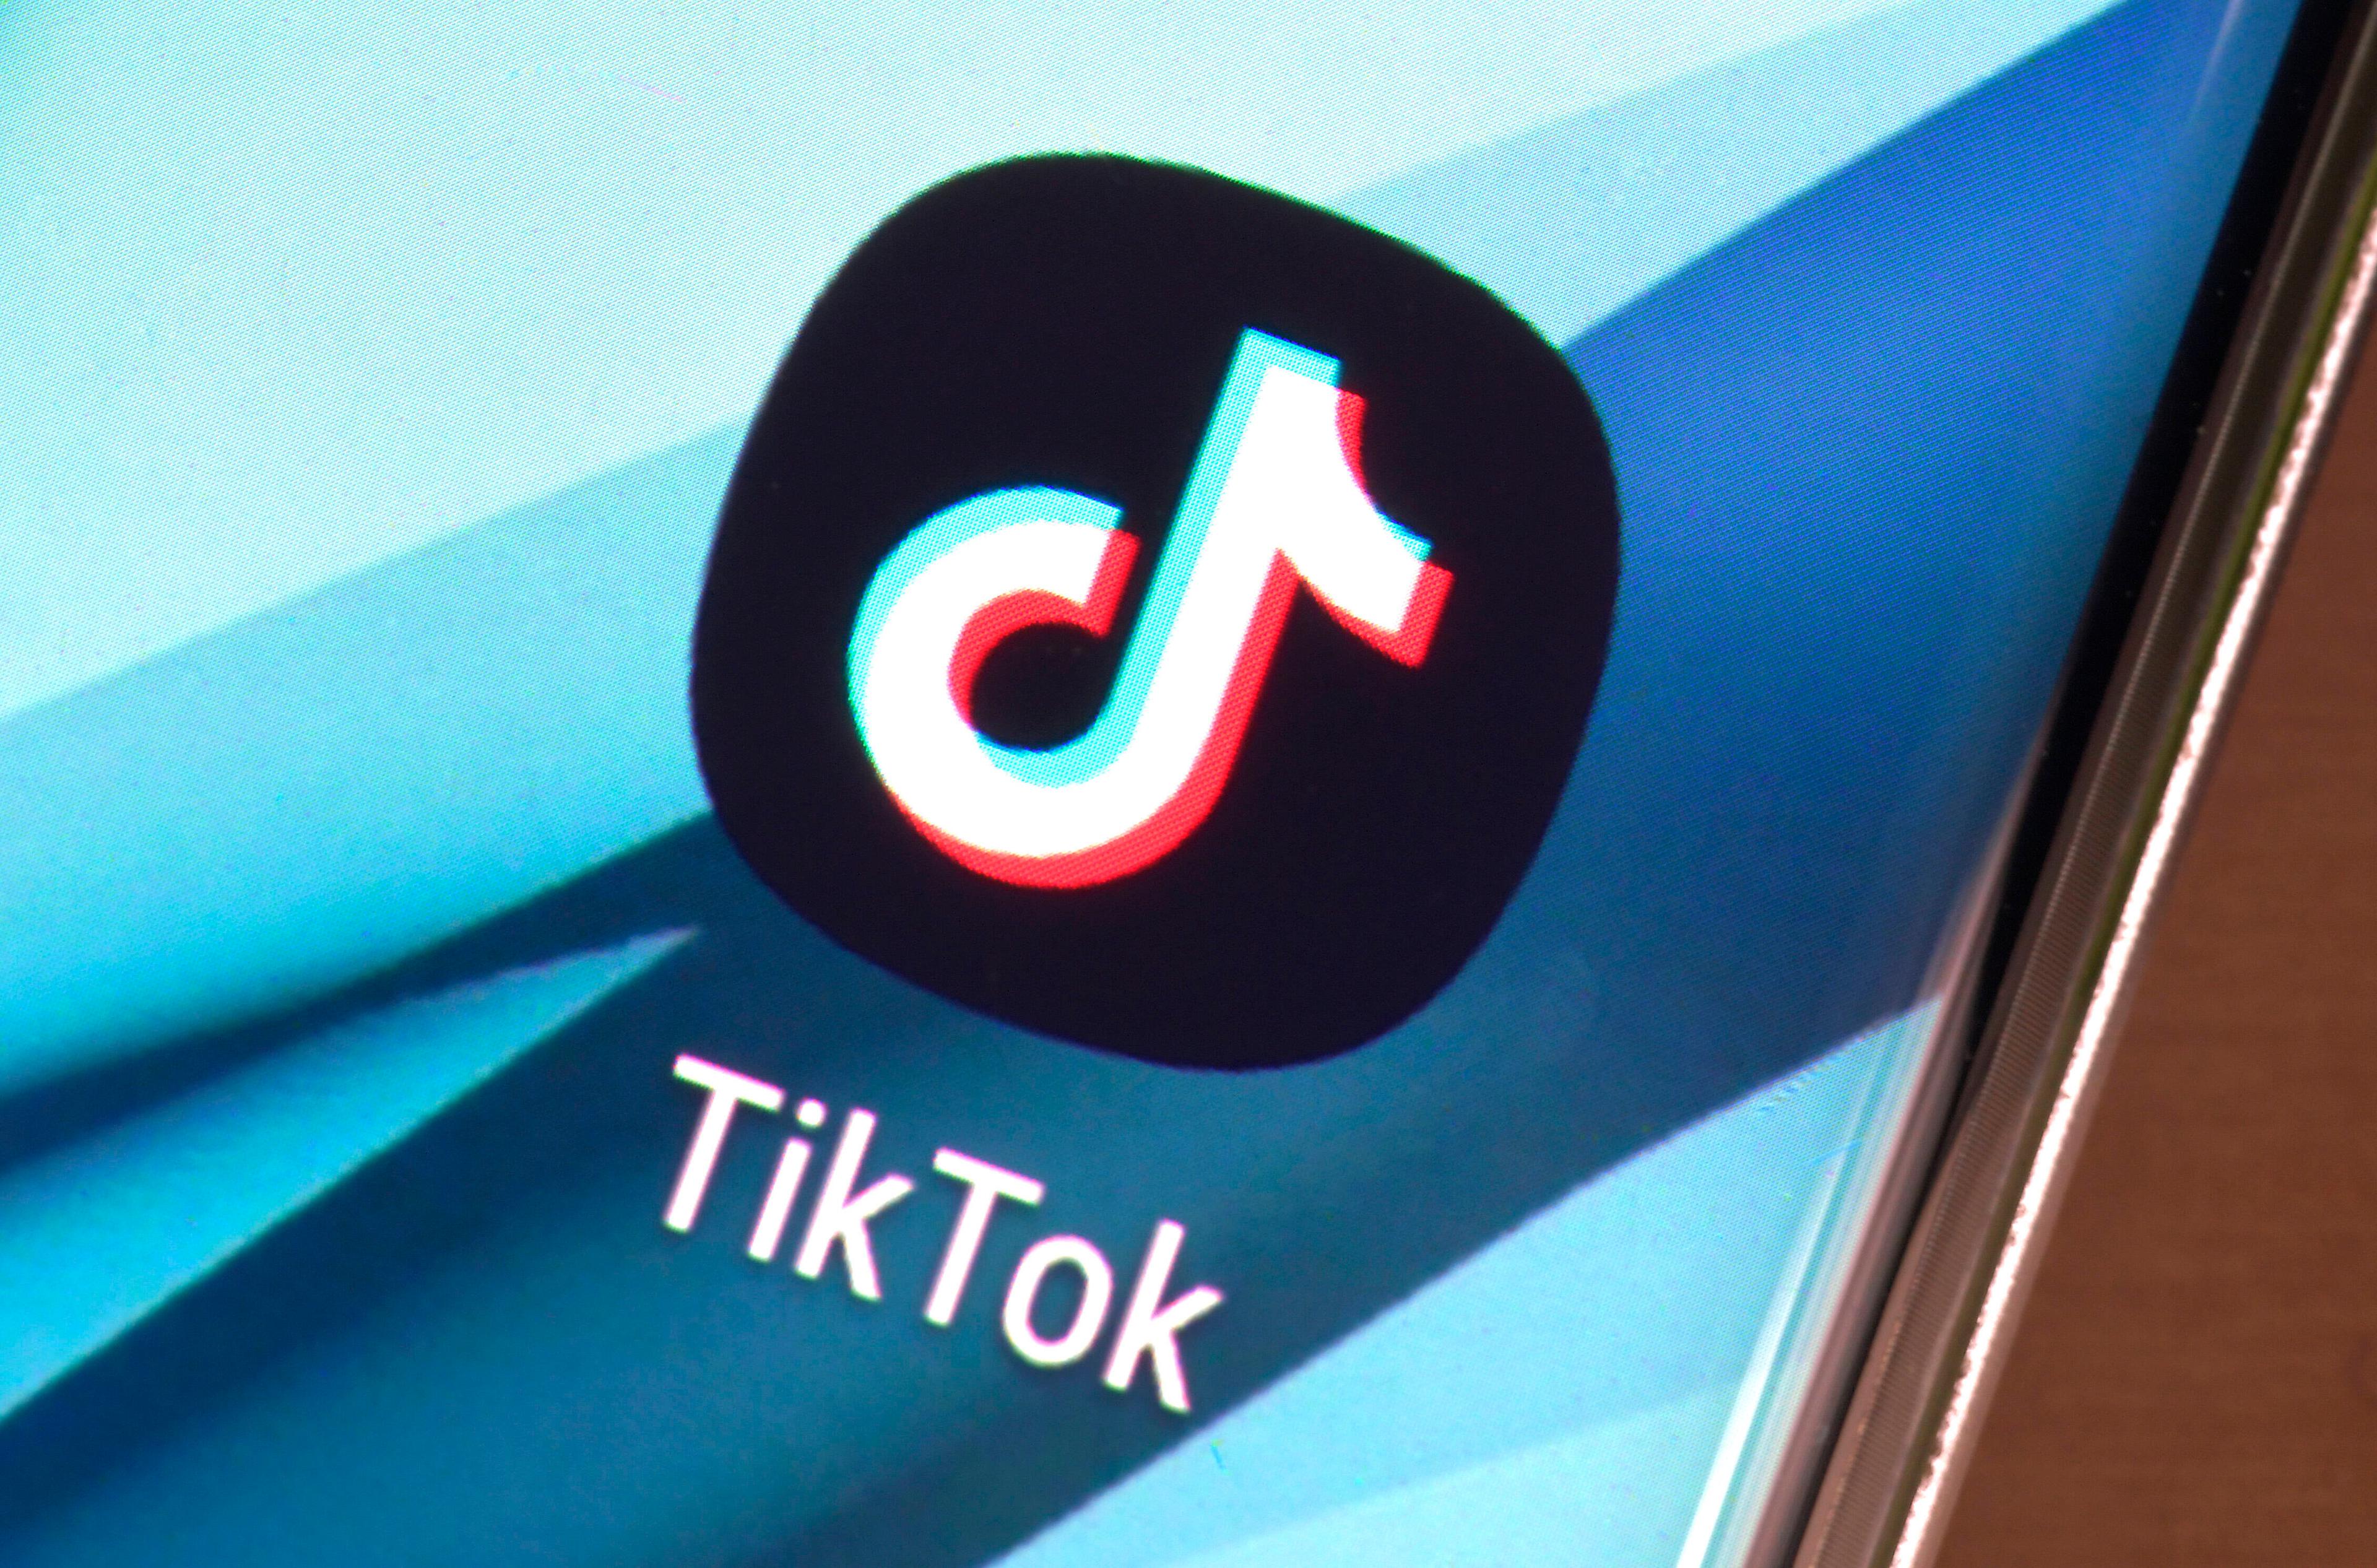 Tiktok, die Kurzvideo-App mit chinesischen Wurzeln, ist die am schnellsten wachsende Social-Plattform auf dem Markt.